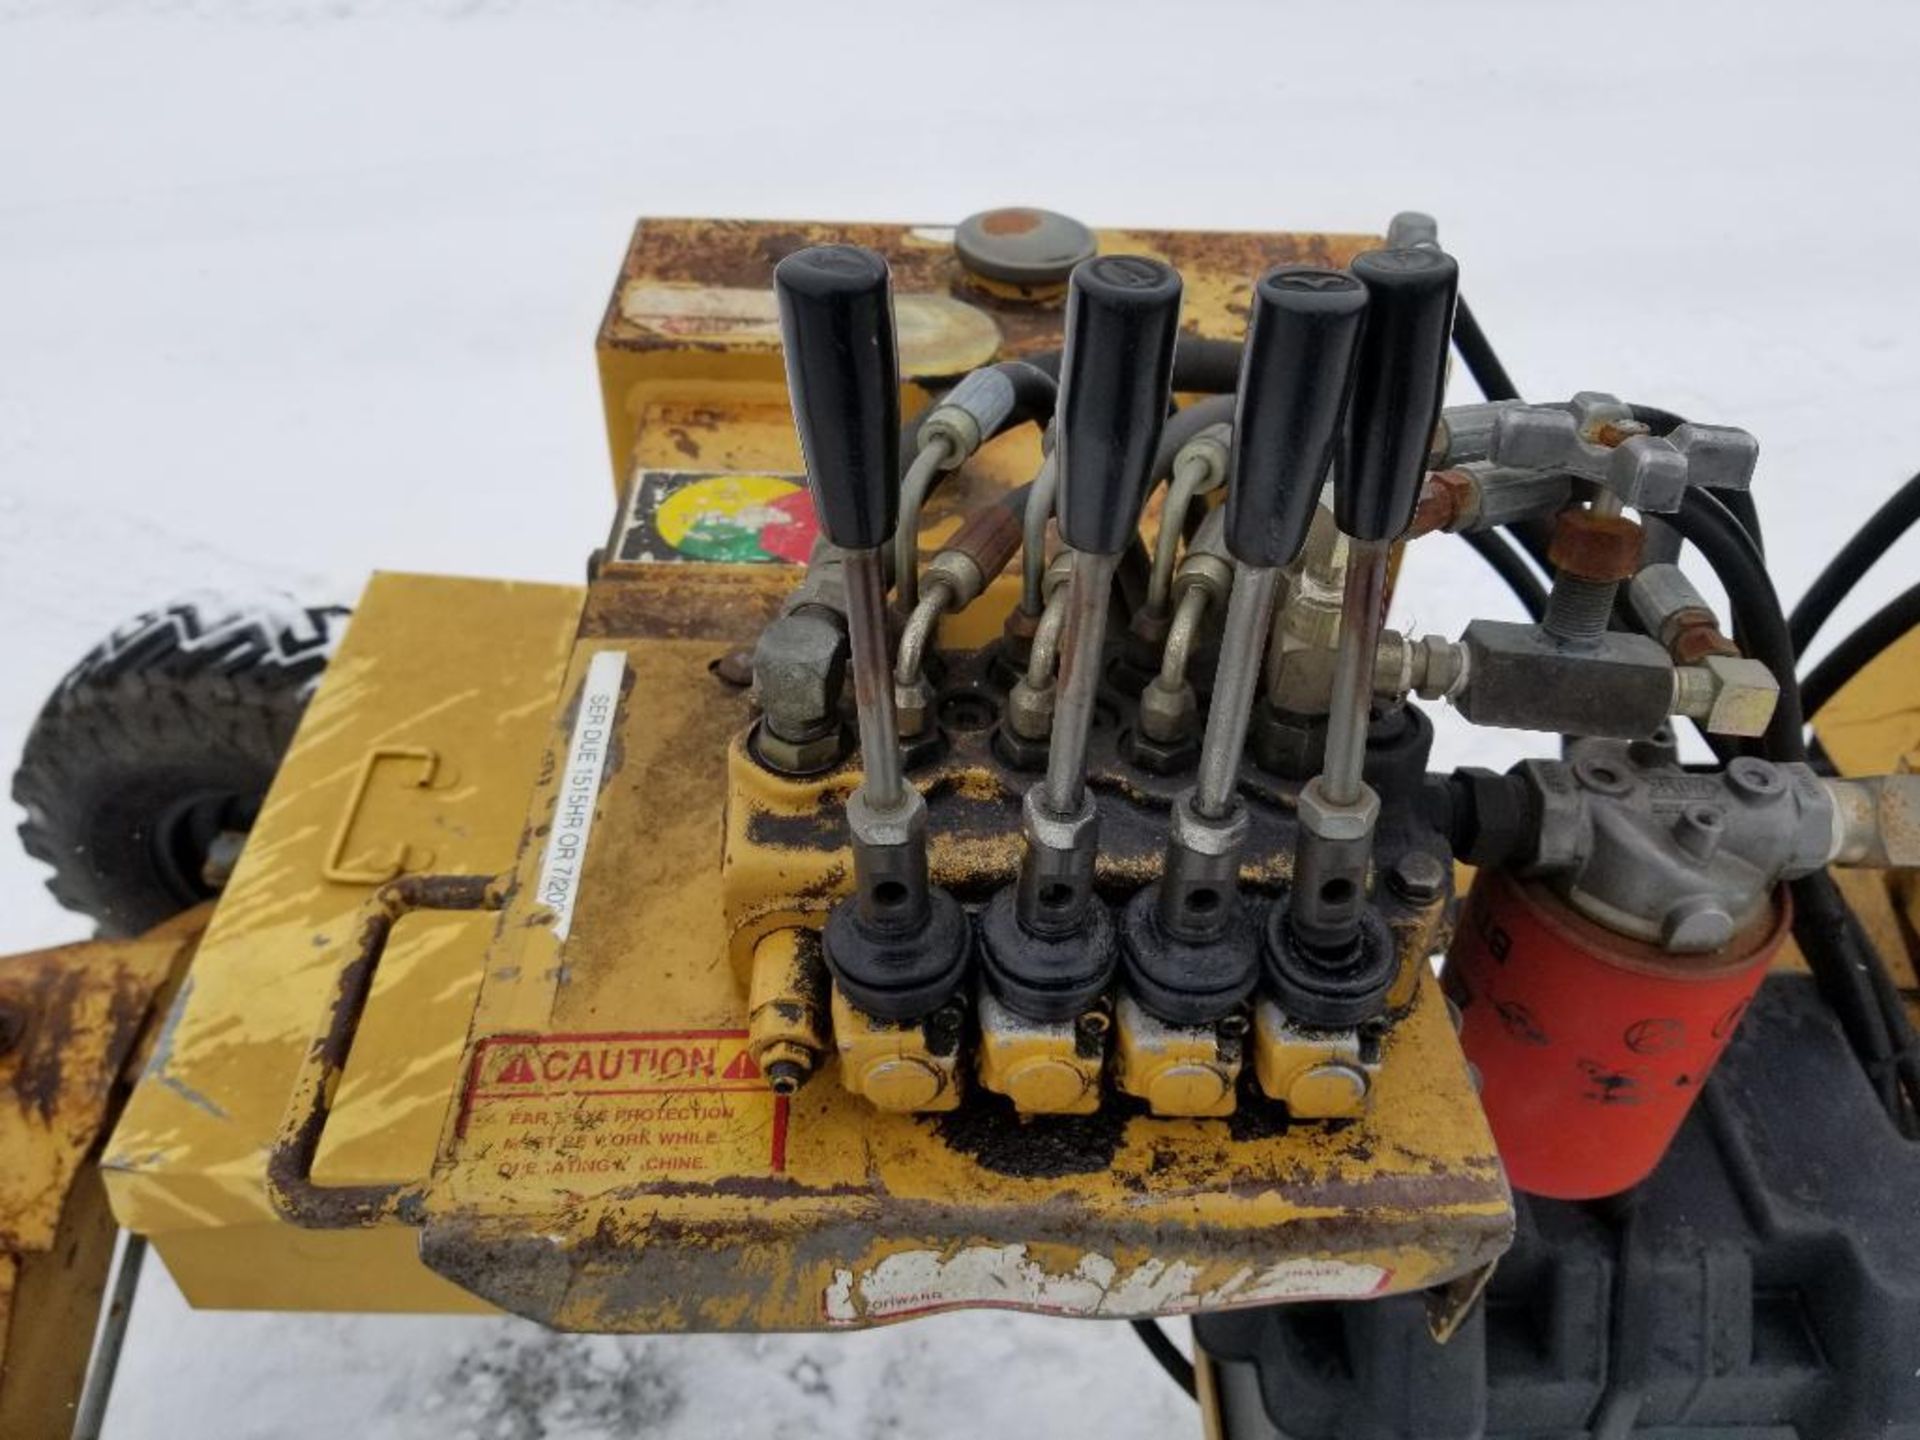 Rayco stump grinder. RG1625 super Jr. Kohler motor. 1320 hours showing on hour meter. - Image 17 of 19